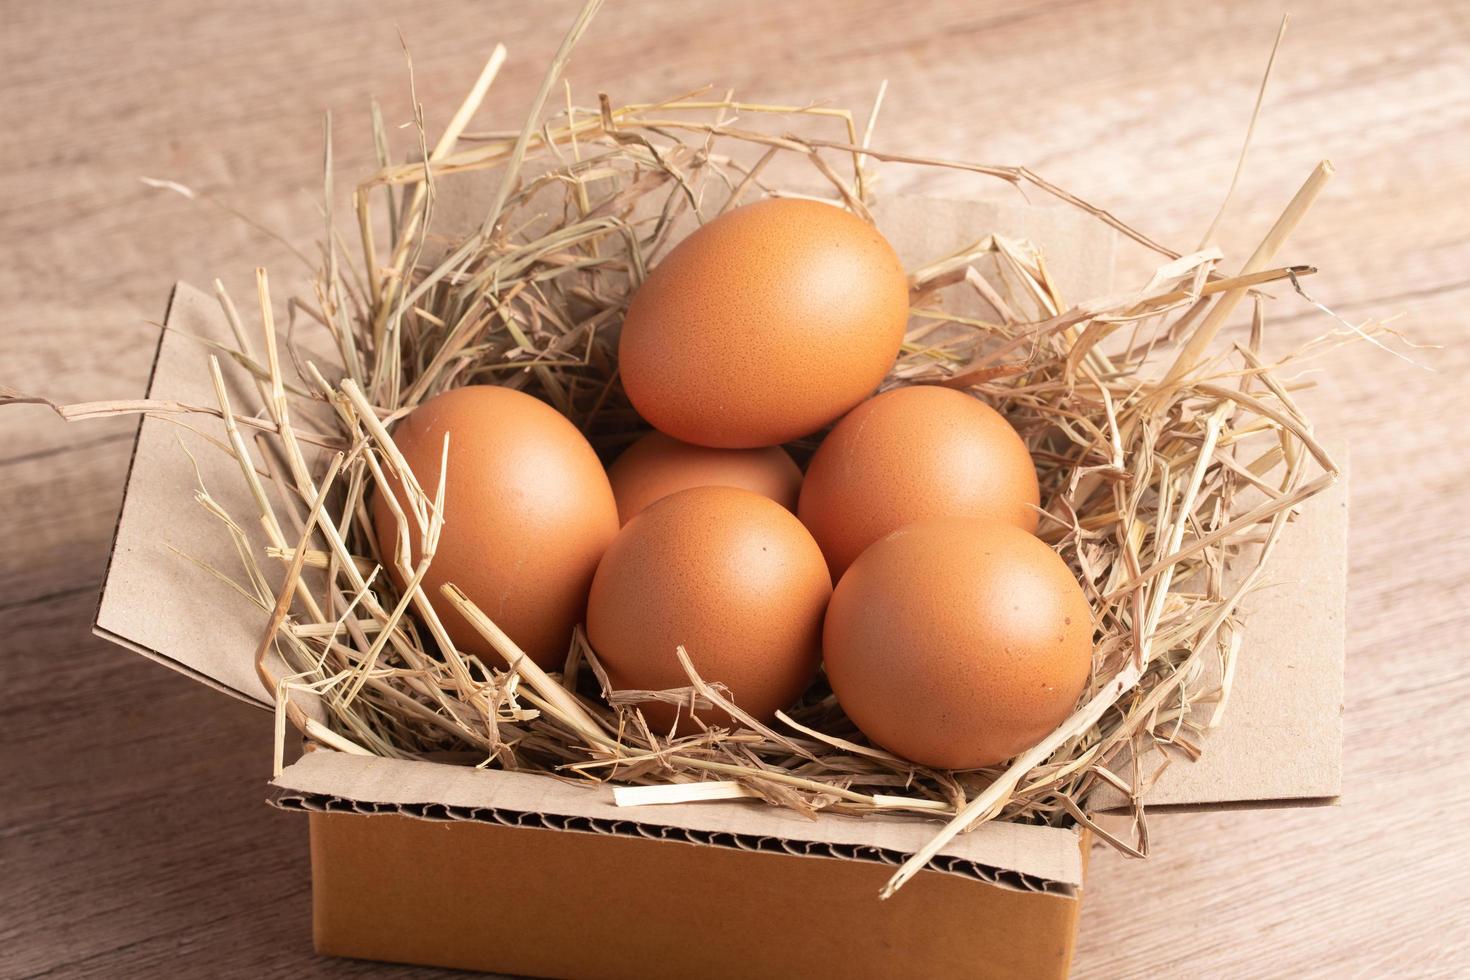 ovos de galinha na palha de arroz colocados em uma caixa foto